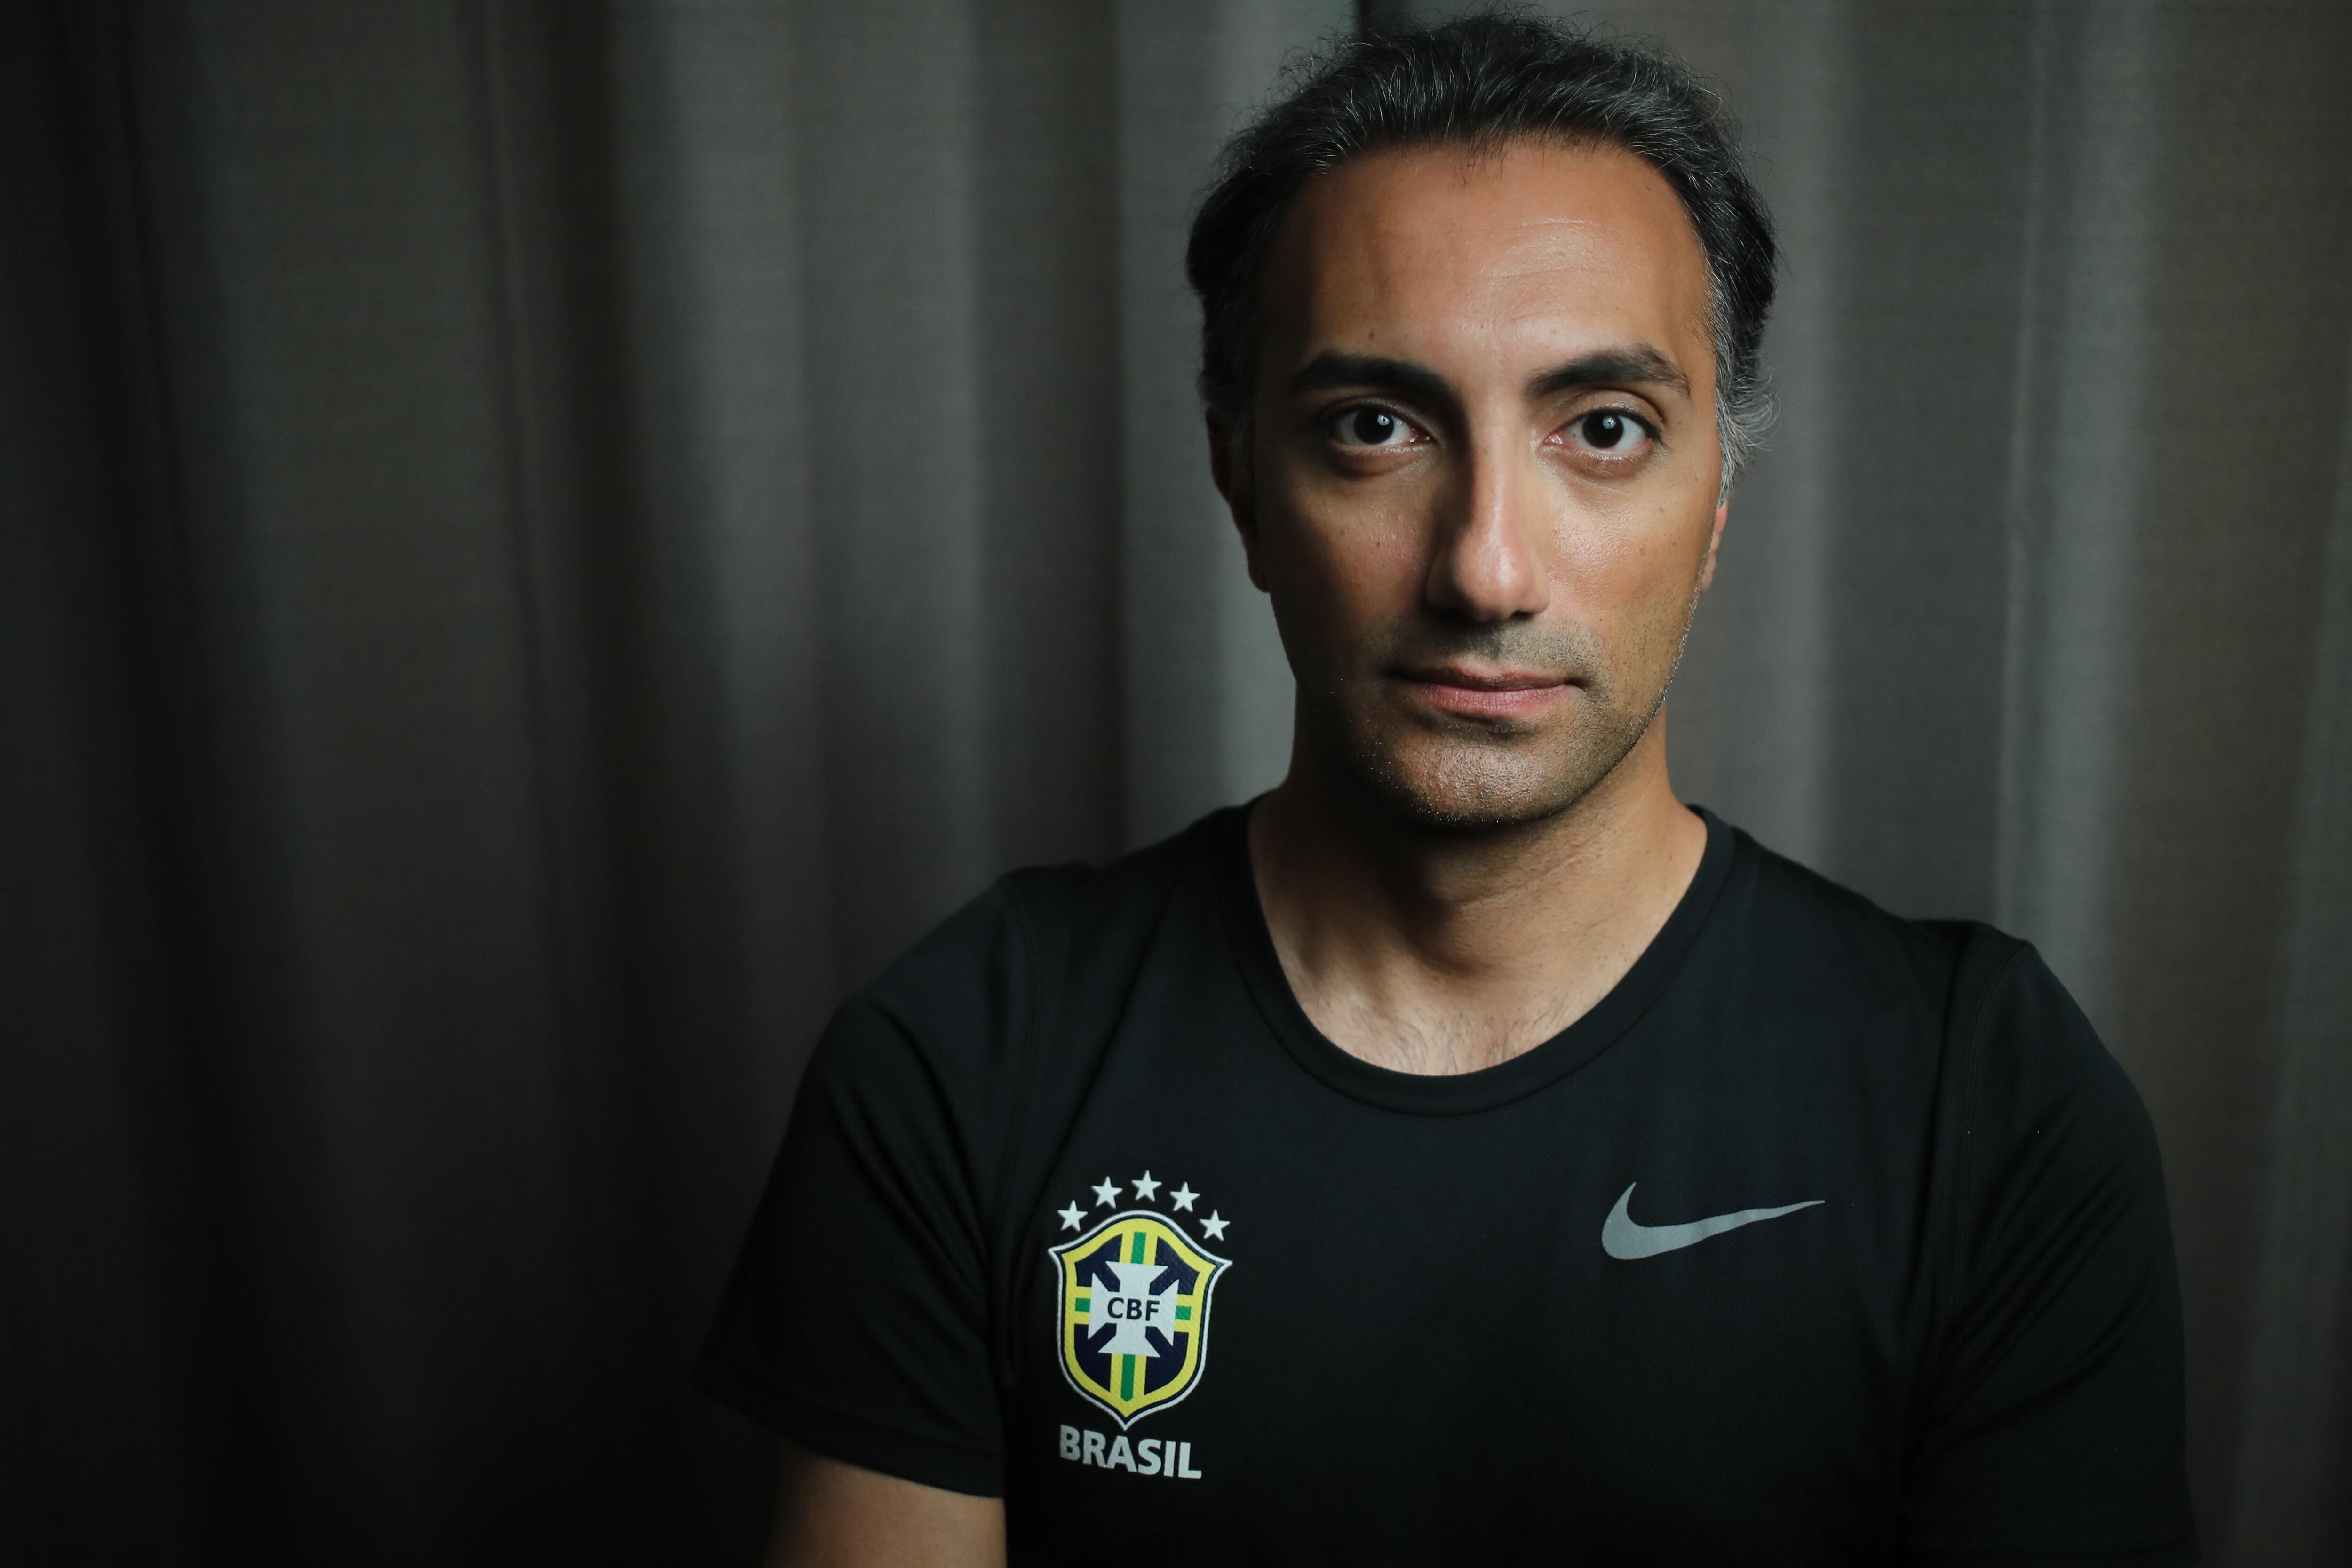 Campeão do mundo em 94, Mauro Silva presta apoio a técnico iraniano vítima  de xenofobia, pi